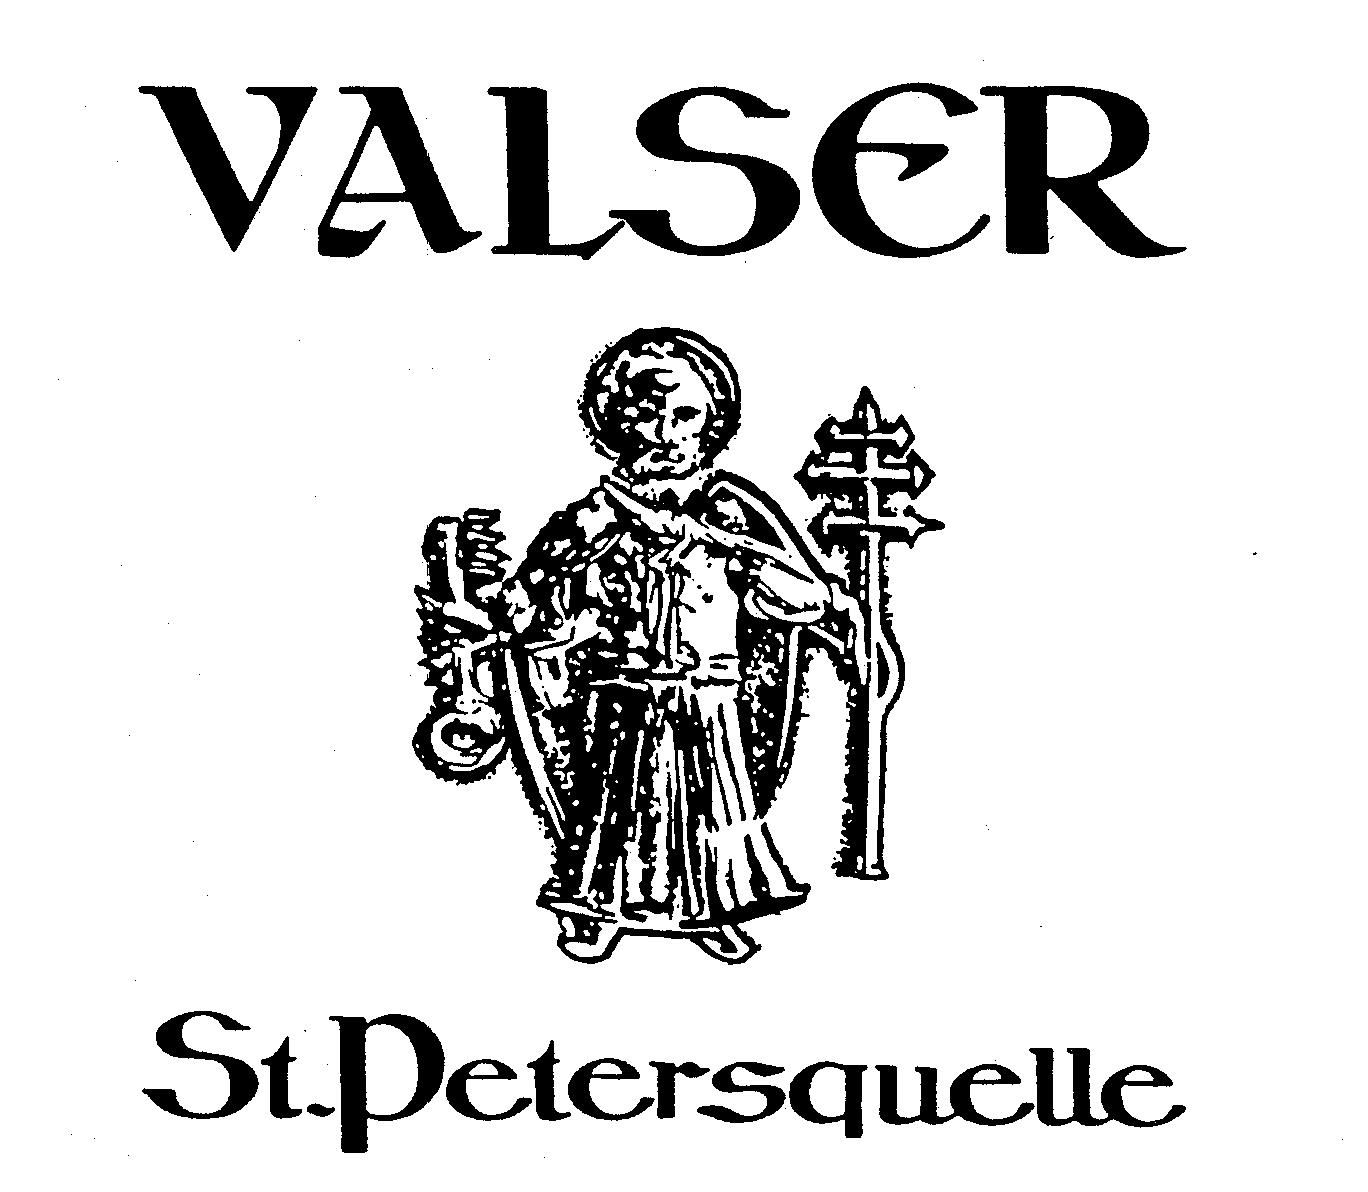  VALSER ST. PETERSQUELLE